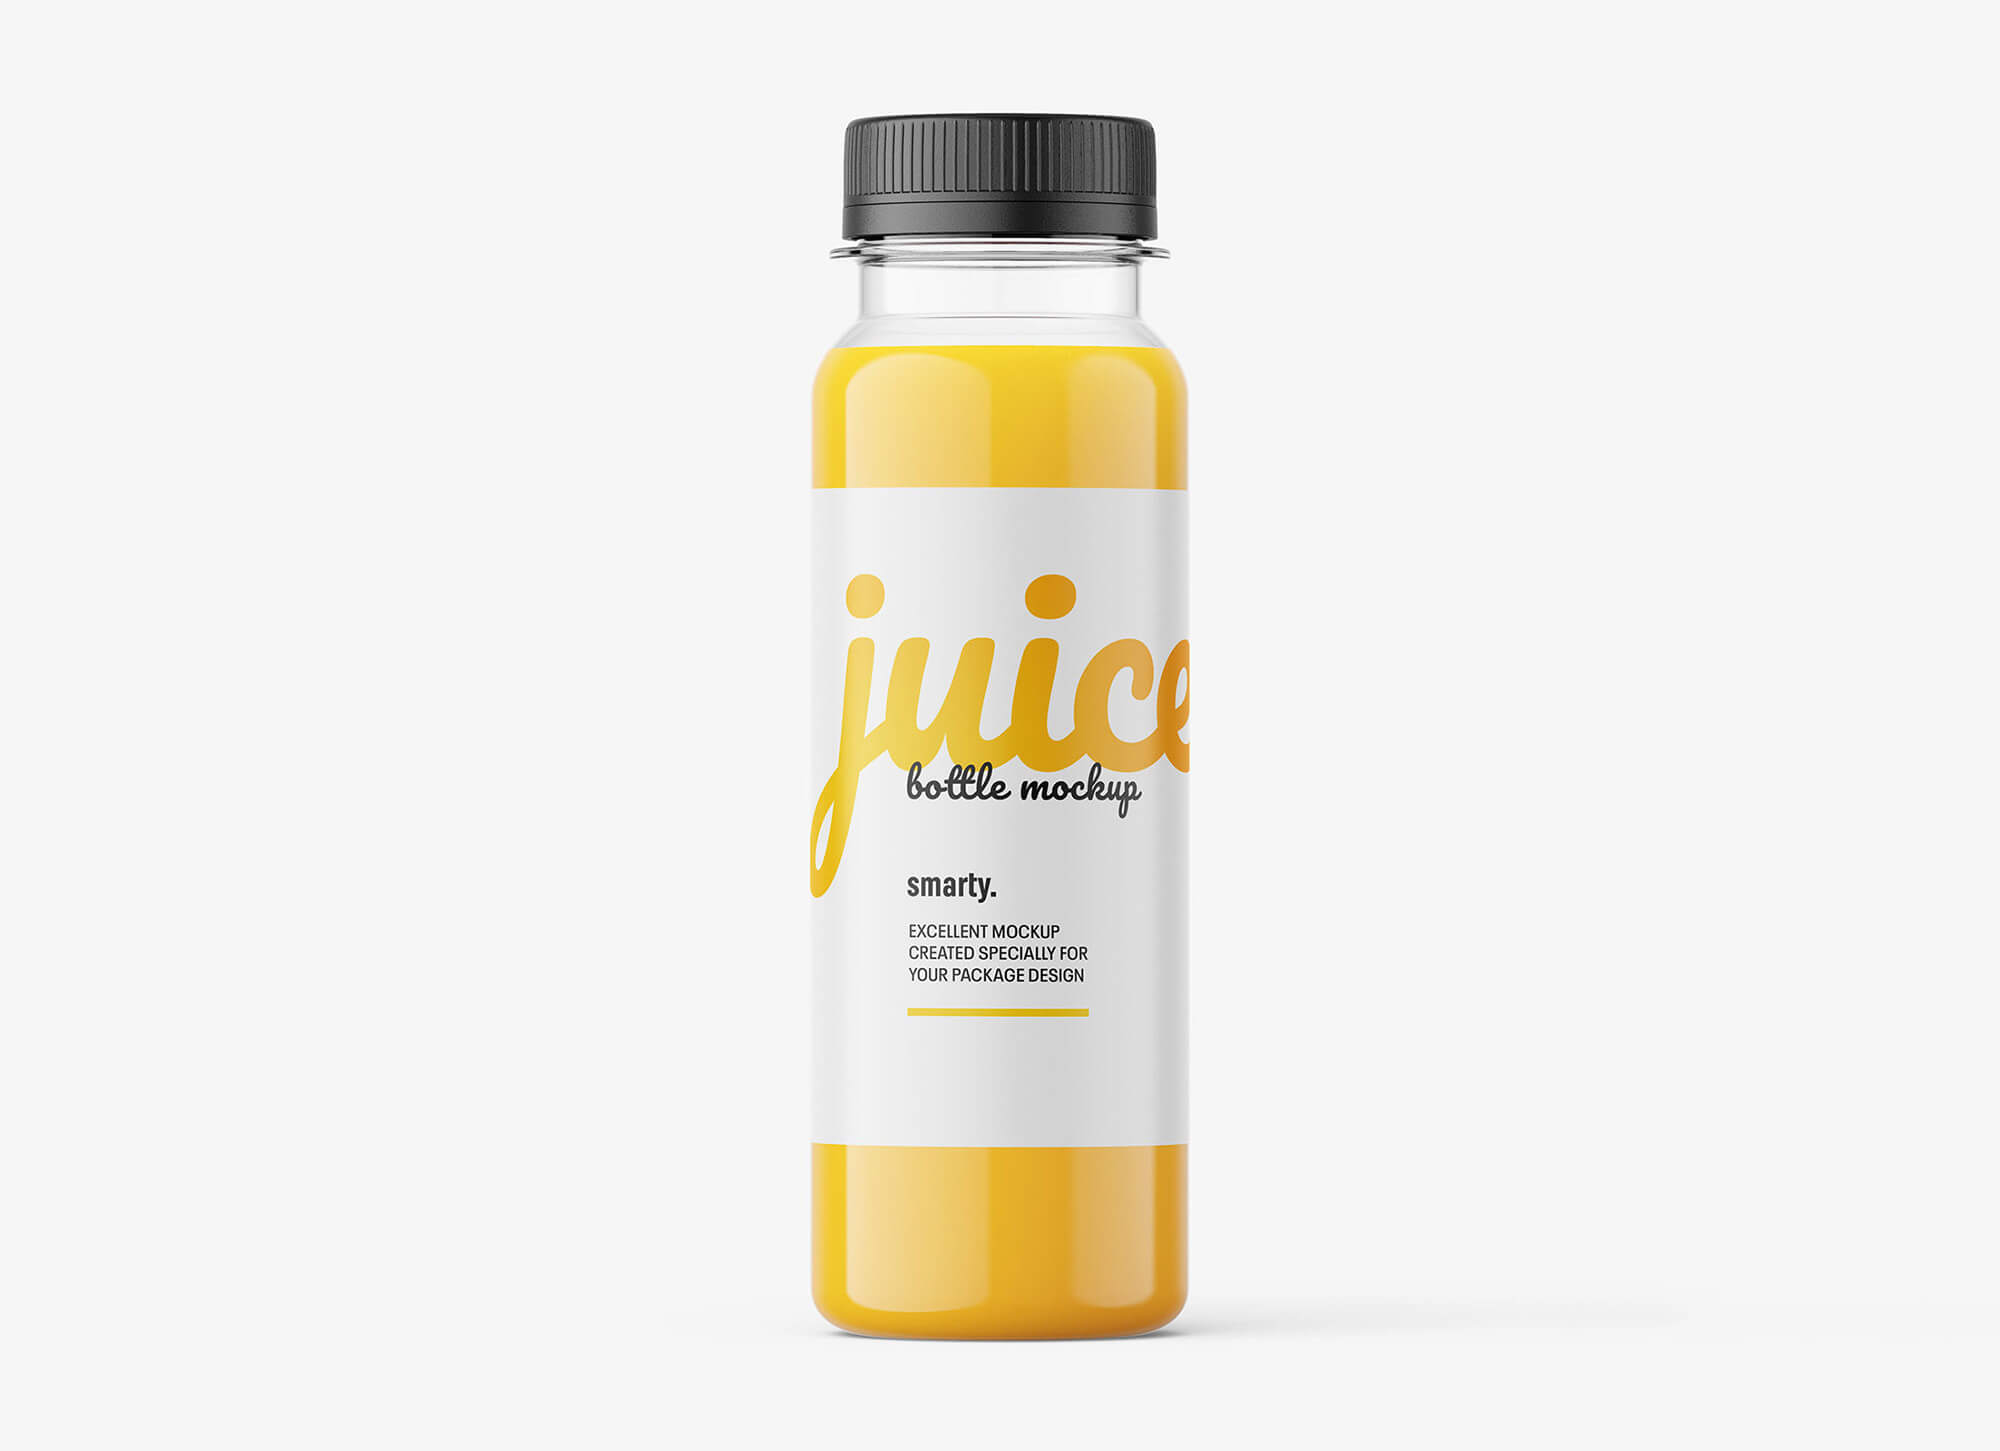 Free-Orange-Juice-Bottle-Mockup-PSD